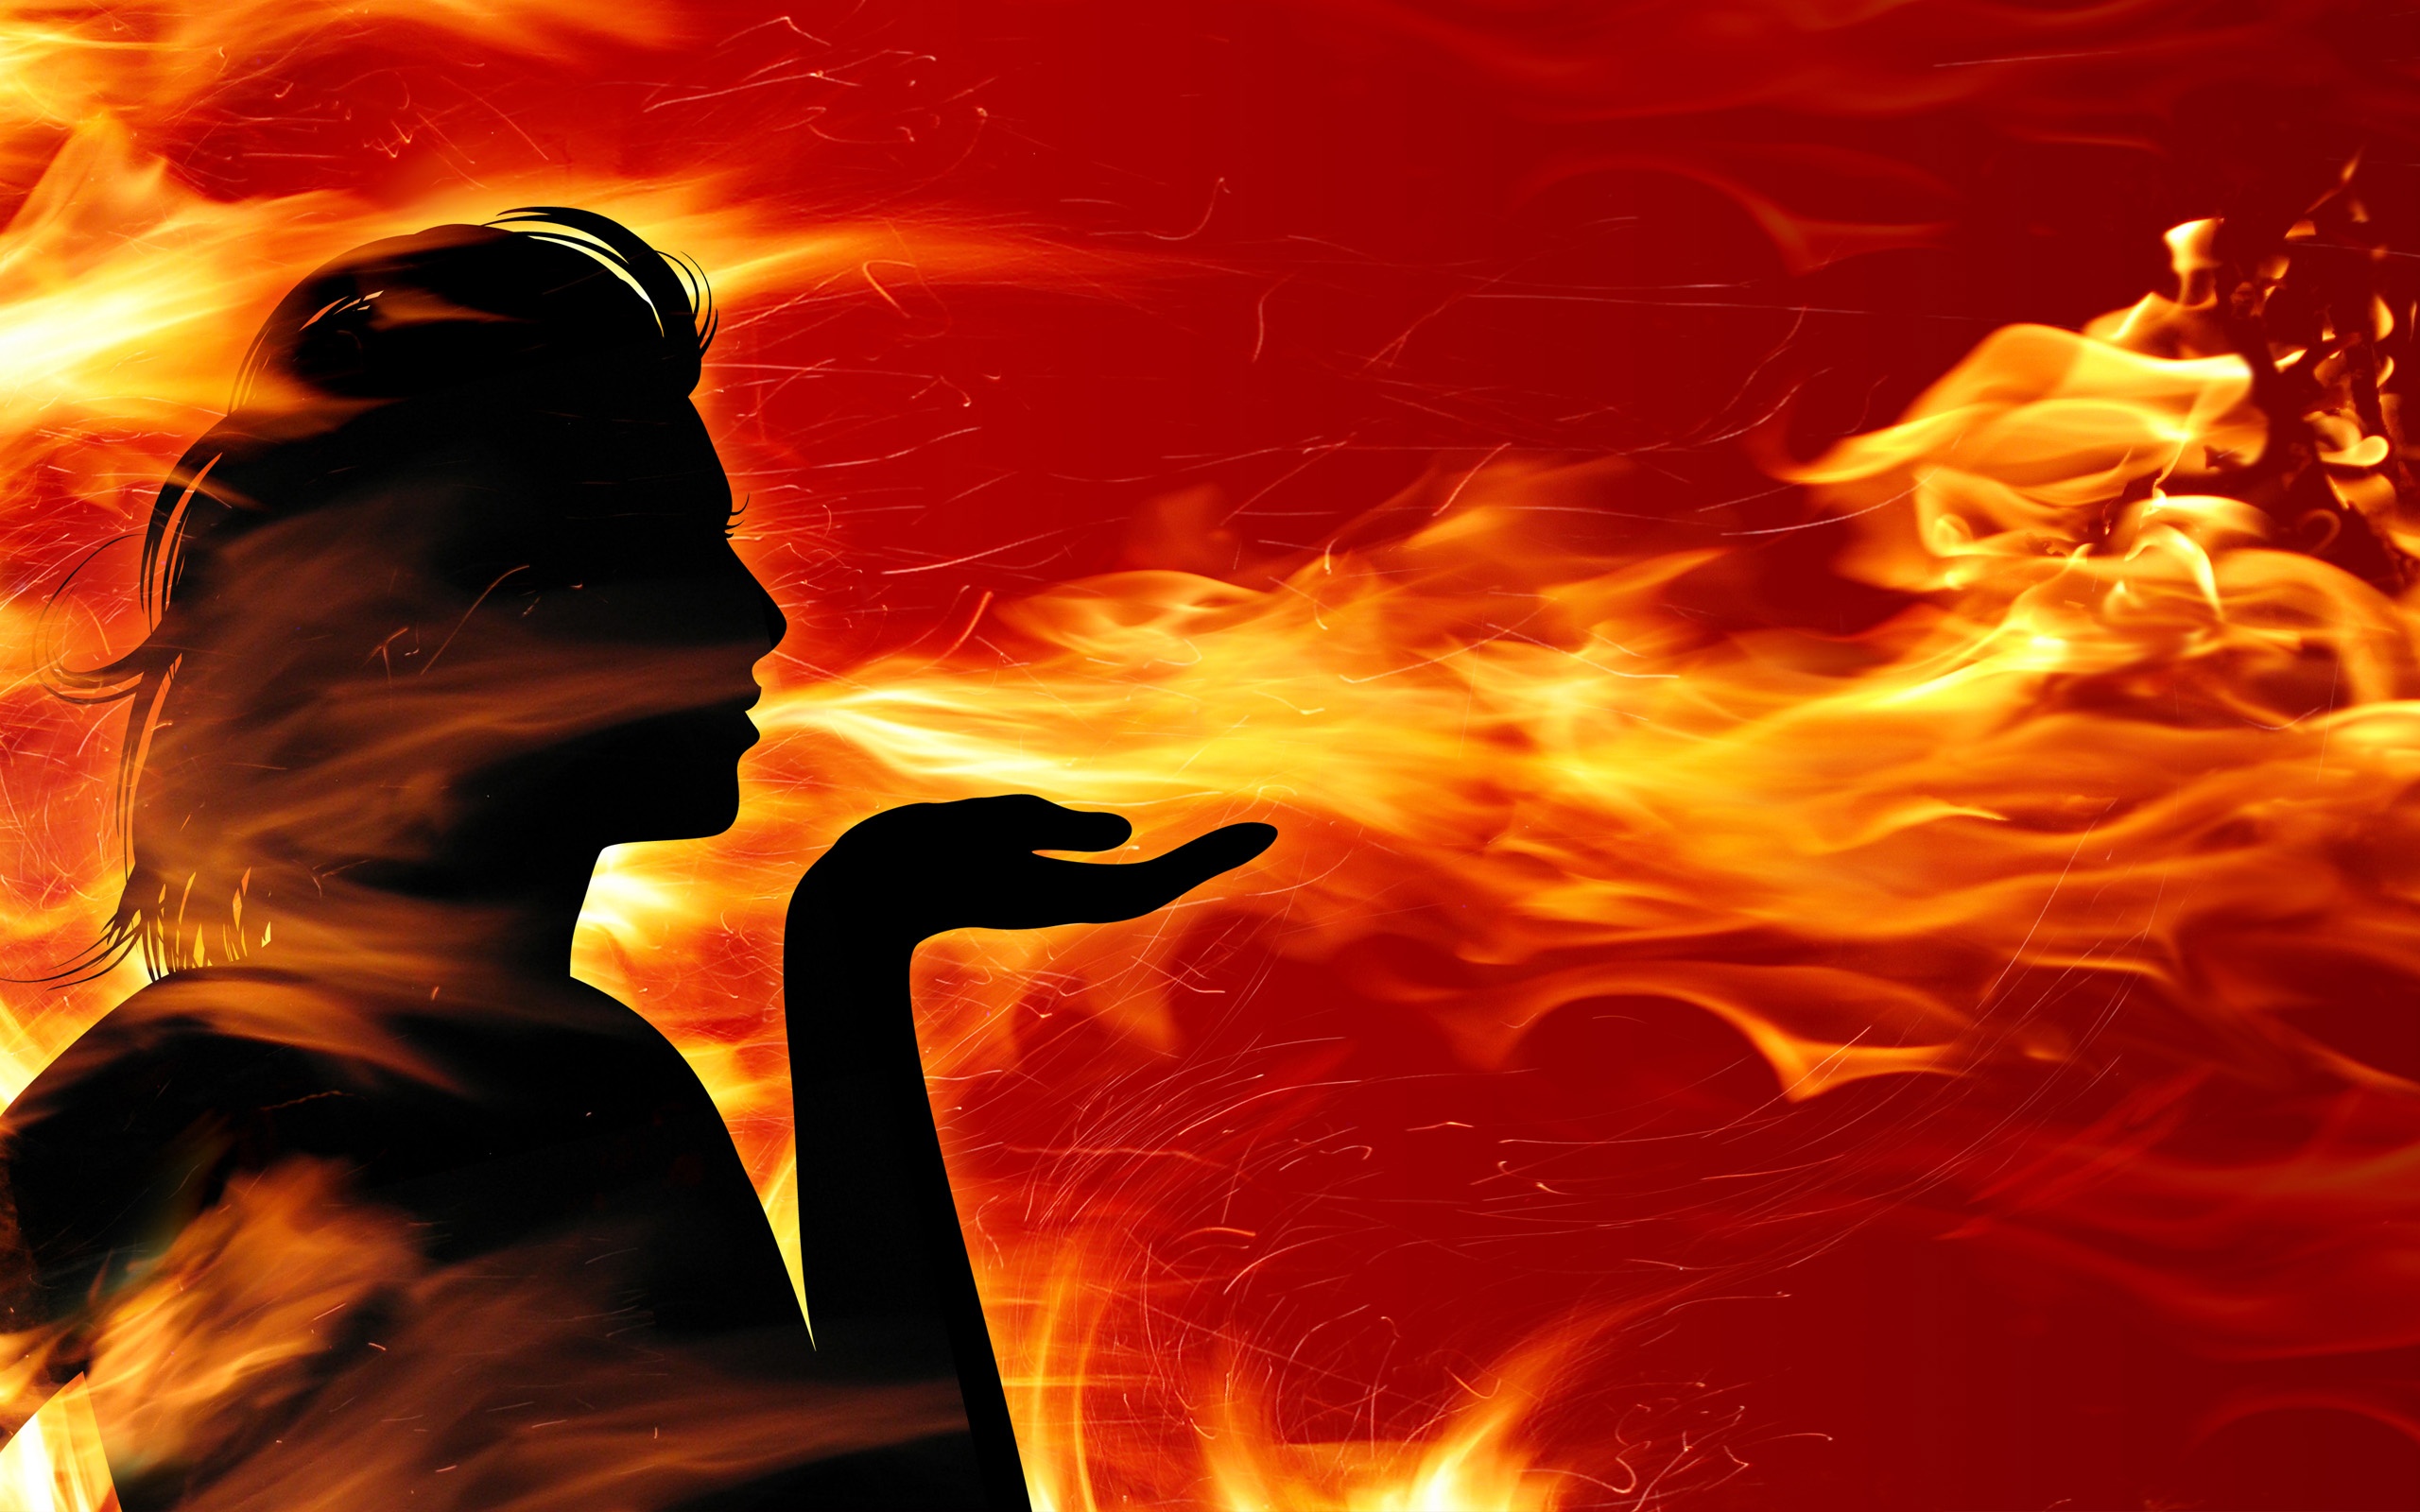 Women of Fire Wallpaper in jpg format for free download